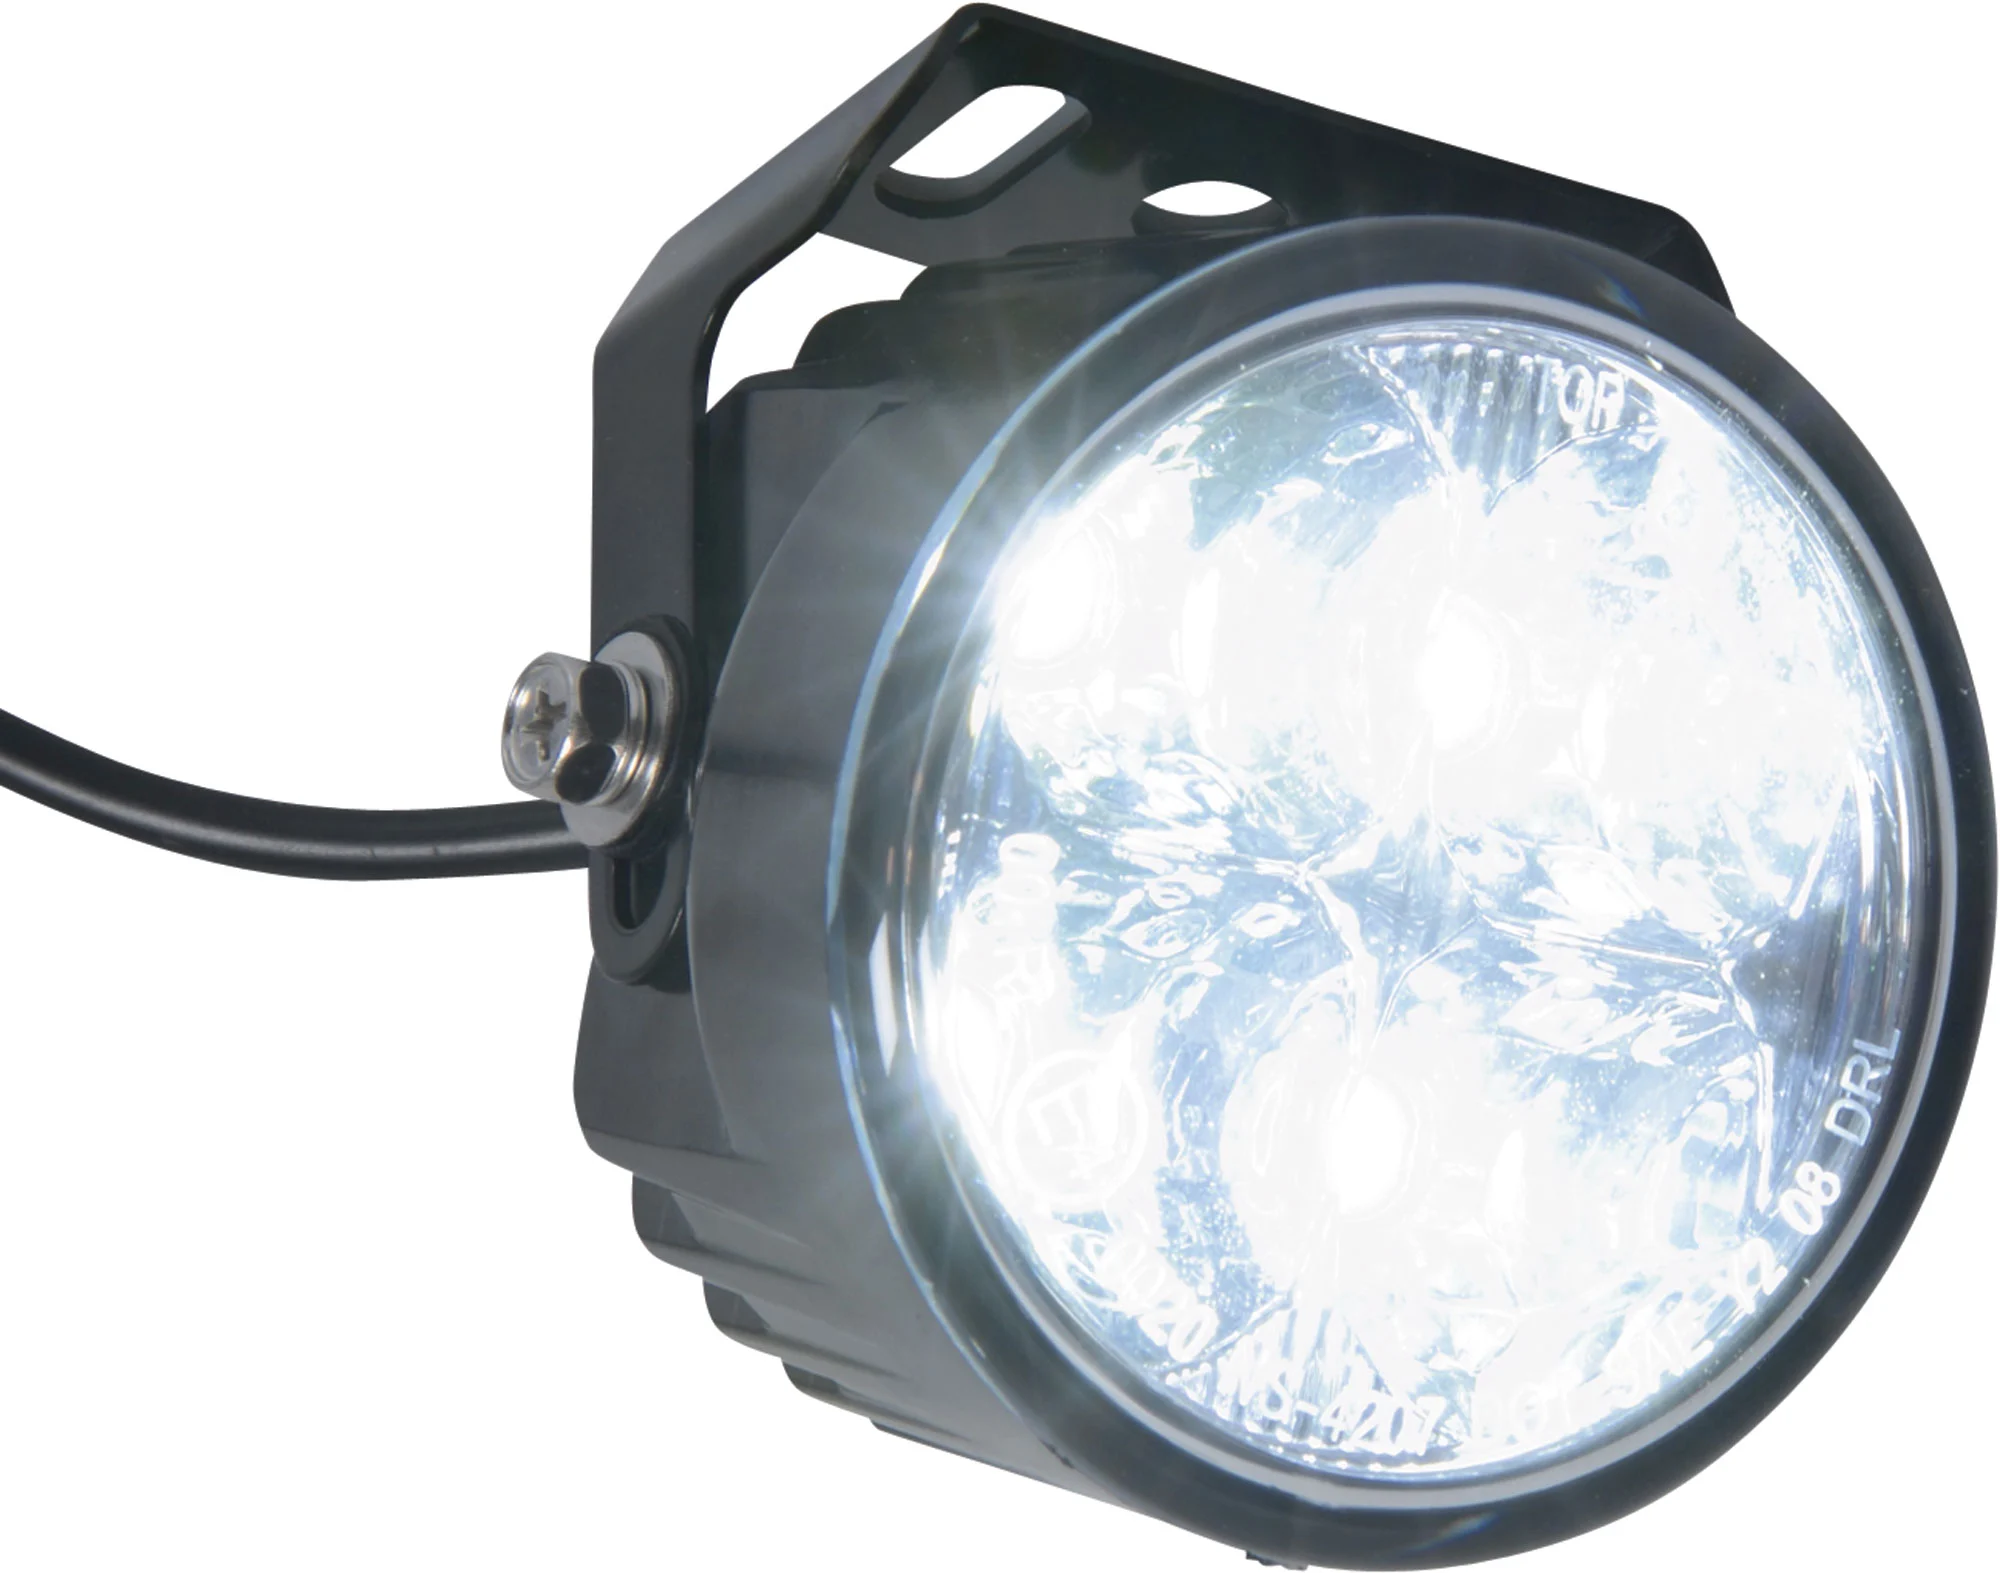 LED Motorradscheinwerfer mit nur 120 mm Durchmesser und rundem Tagfahrlicht